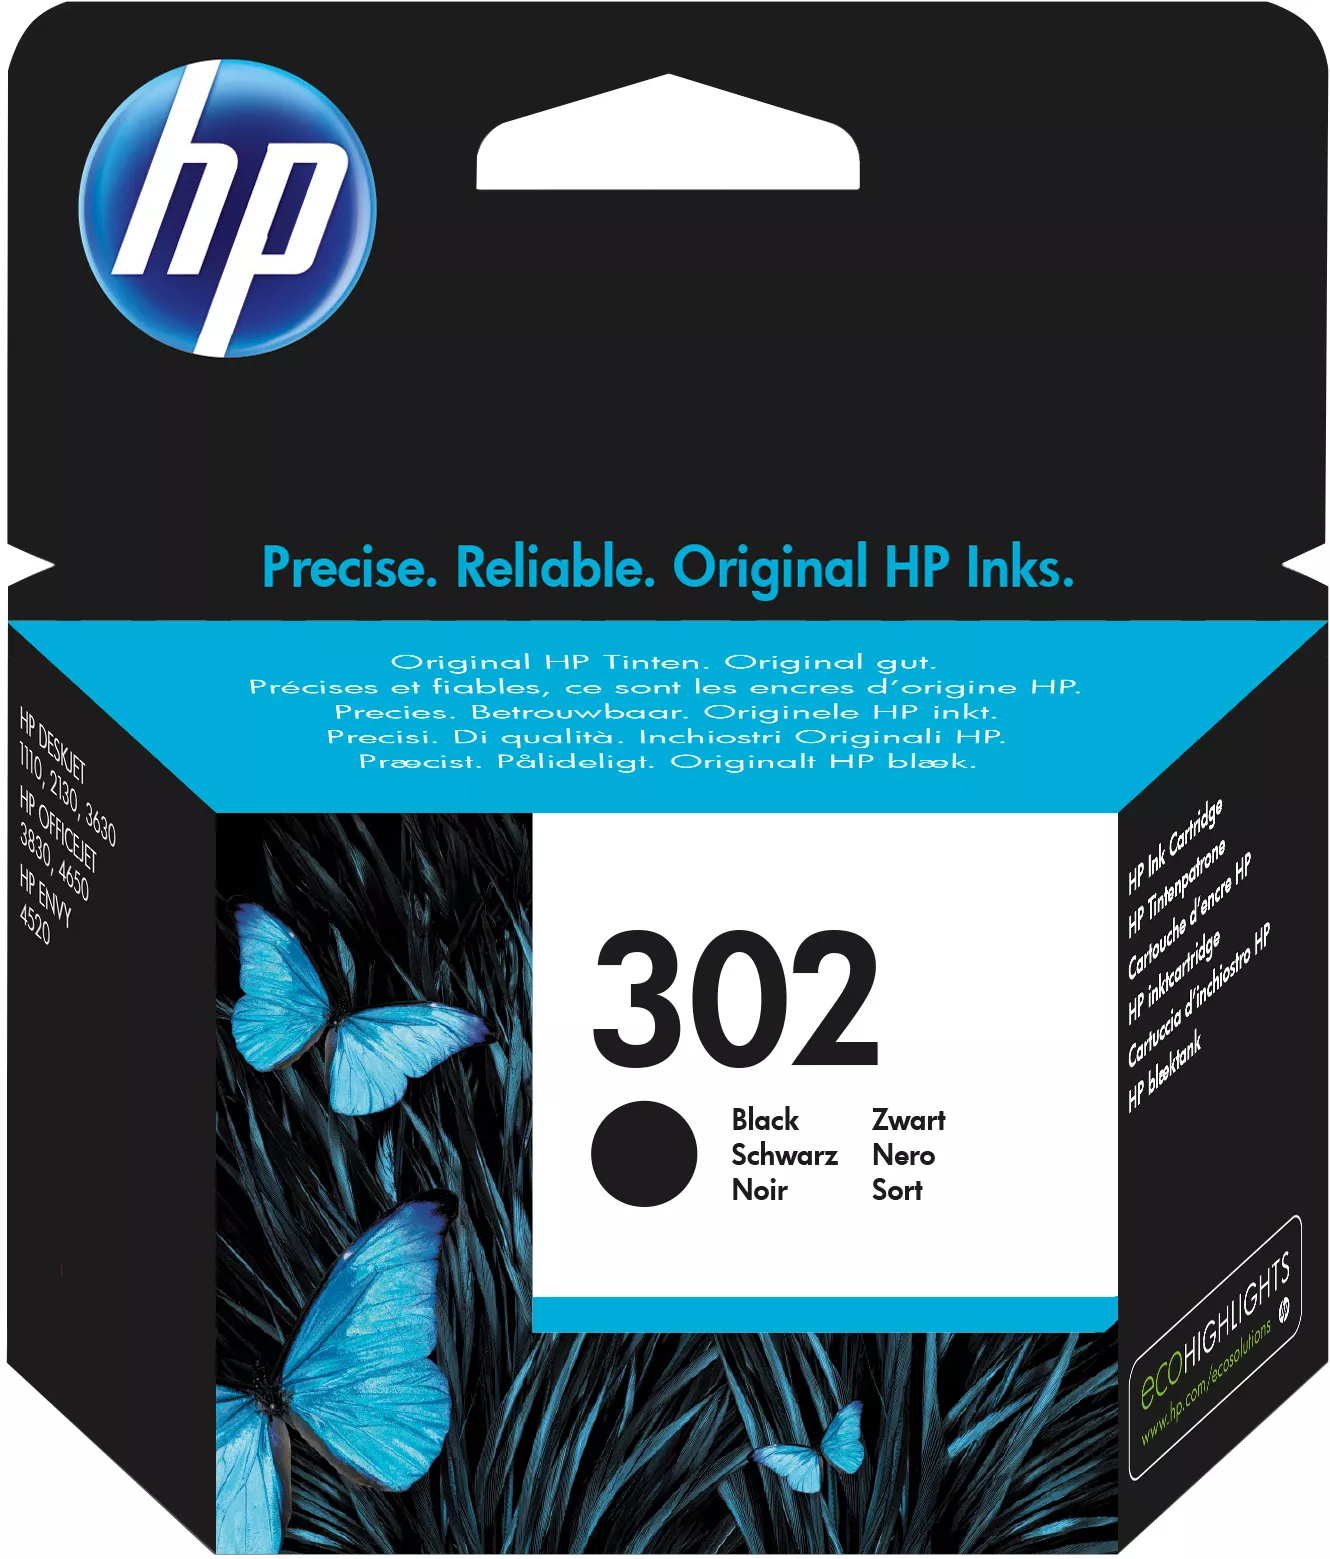 Vente HP 302 original Black Ink cartridge F6U66AE 301Blister au meilleur prix